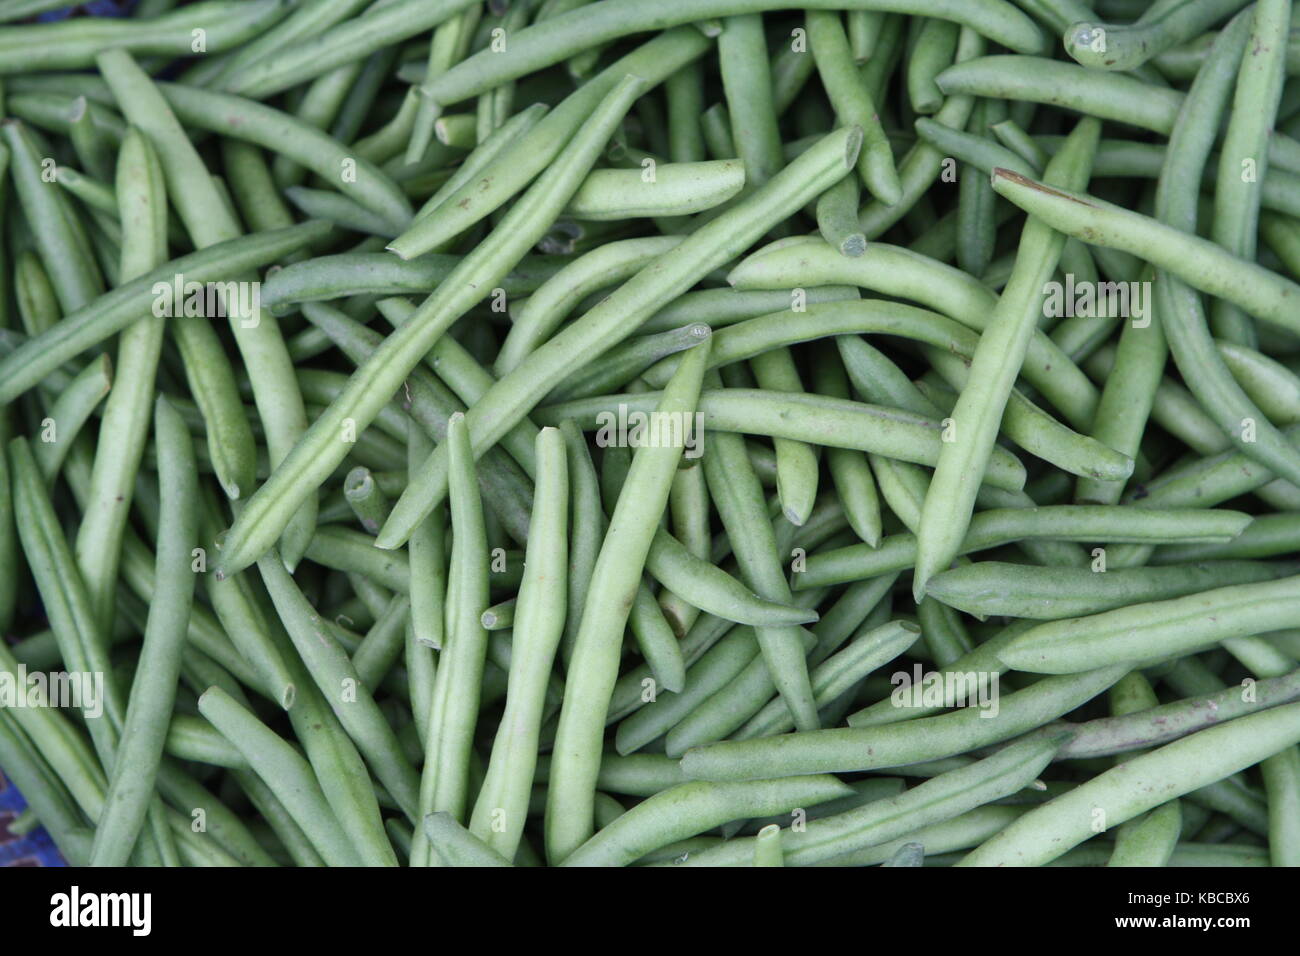 grüne bohnen - green beans on Market Stock Photo